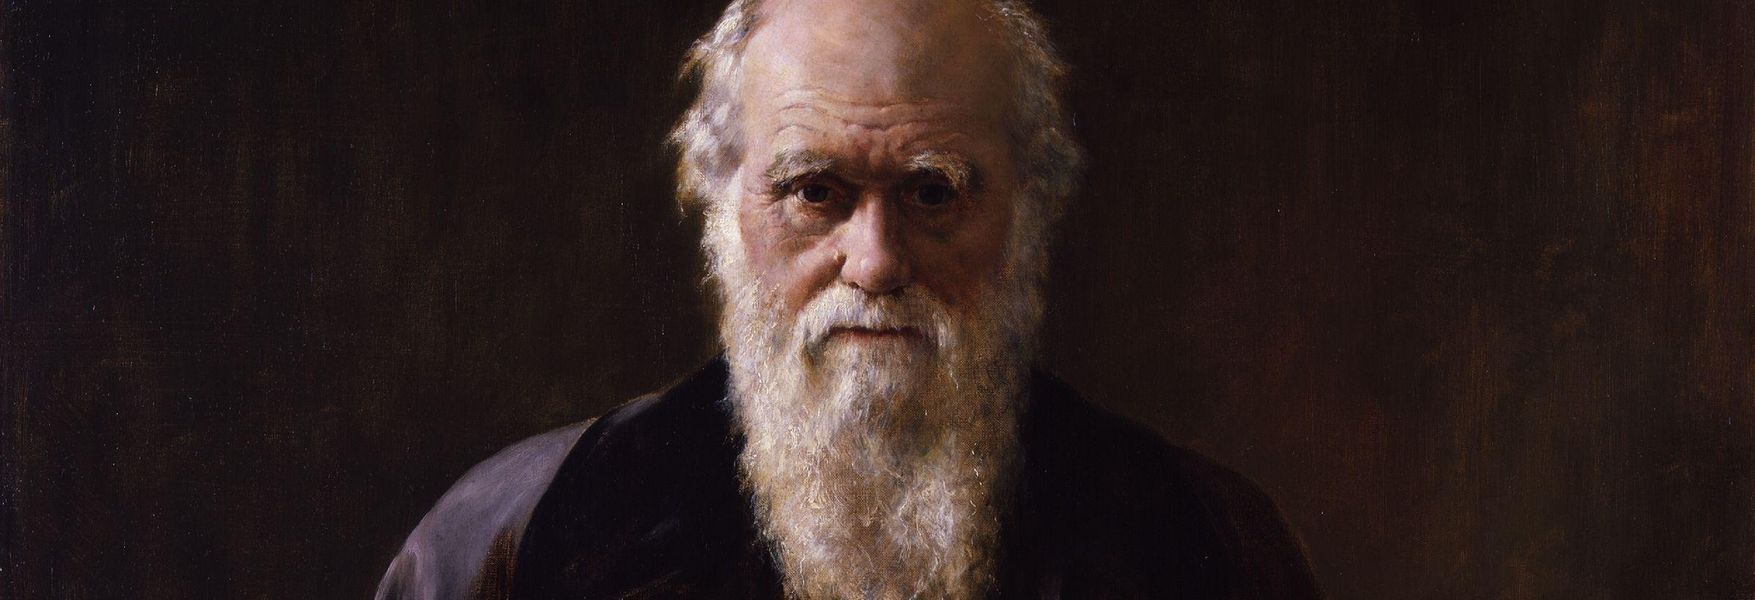 La otra cara de Darwin | OpenMind